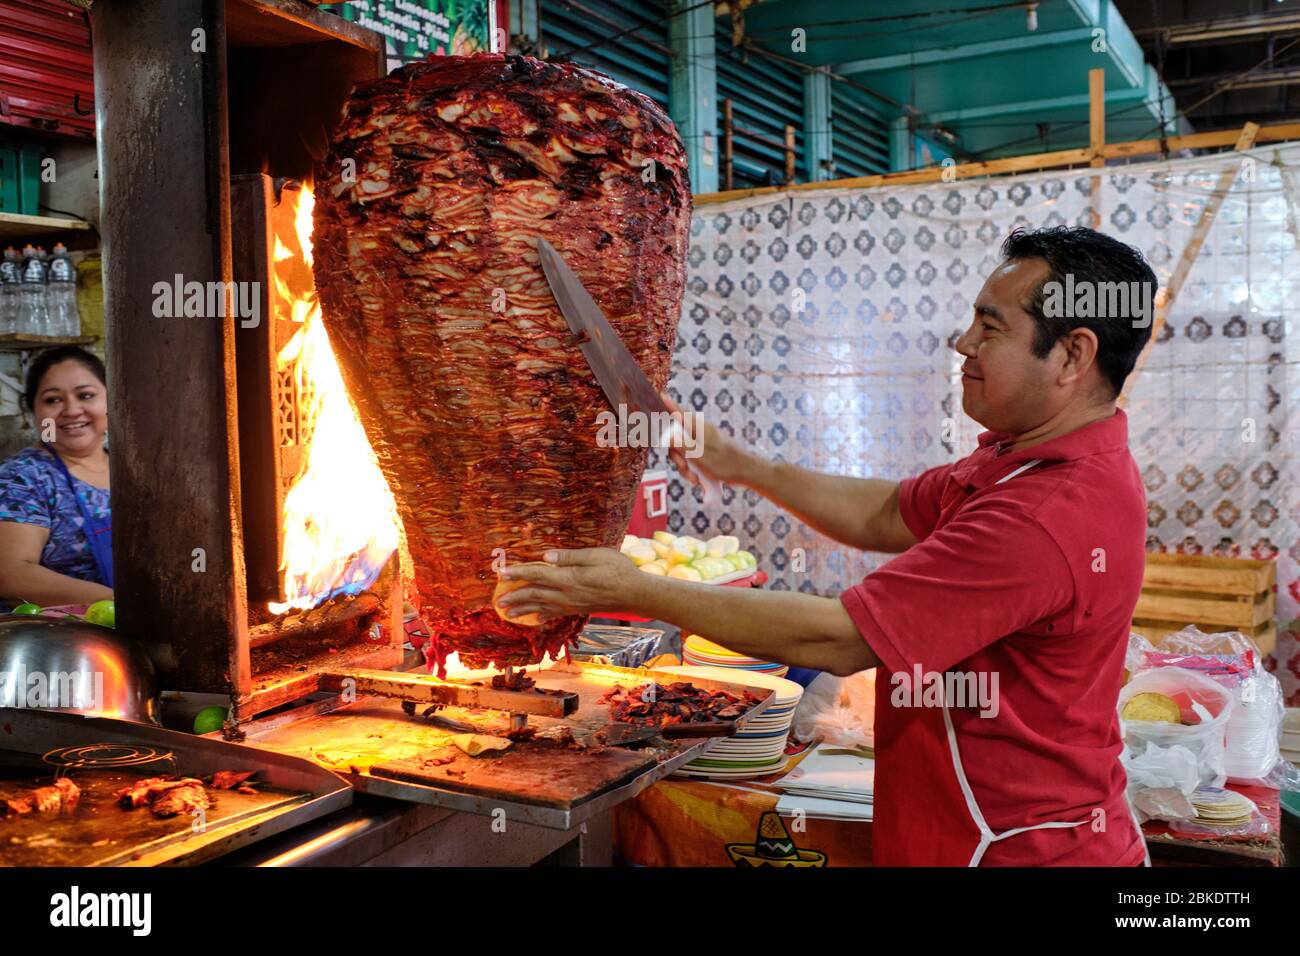 Cameriere che taglia porzioni di carne da un grande shawarma che sta cucinando sopra un fuoco in un ristorante di strada nel mercato comunale di Merida. Foto Stock